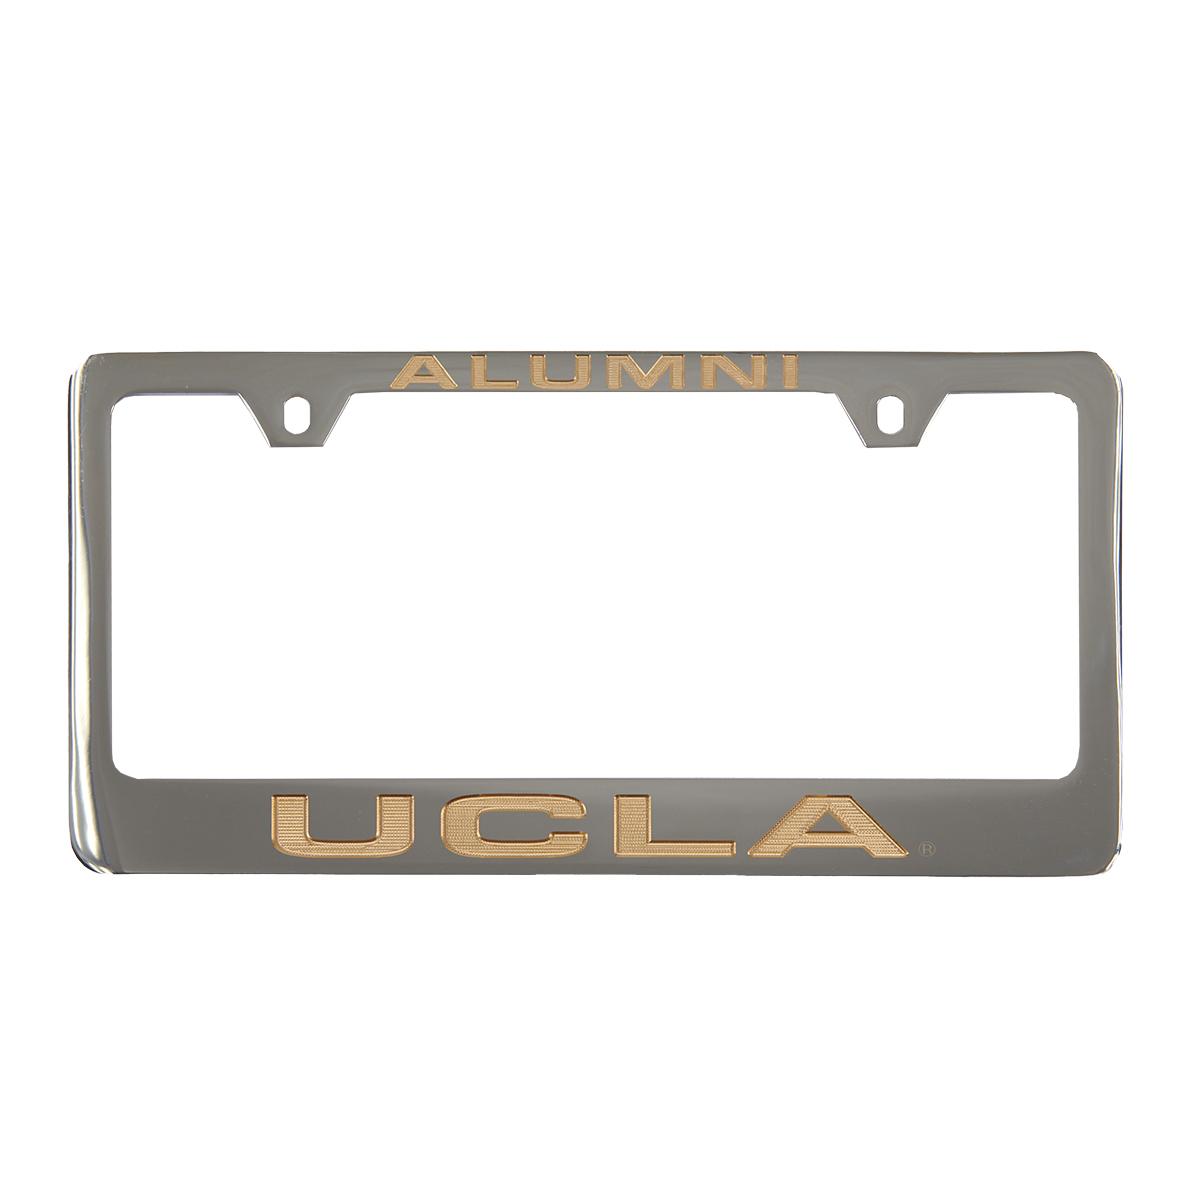 UCLA Alumni Engraved License Frame